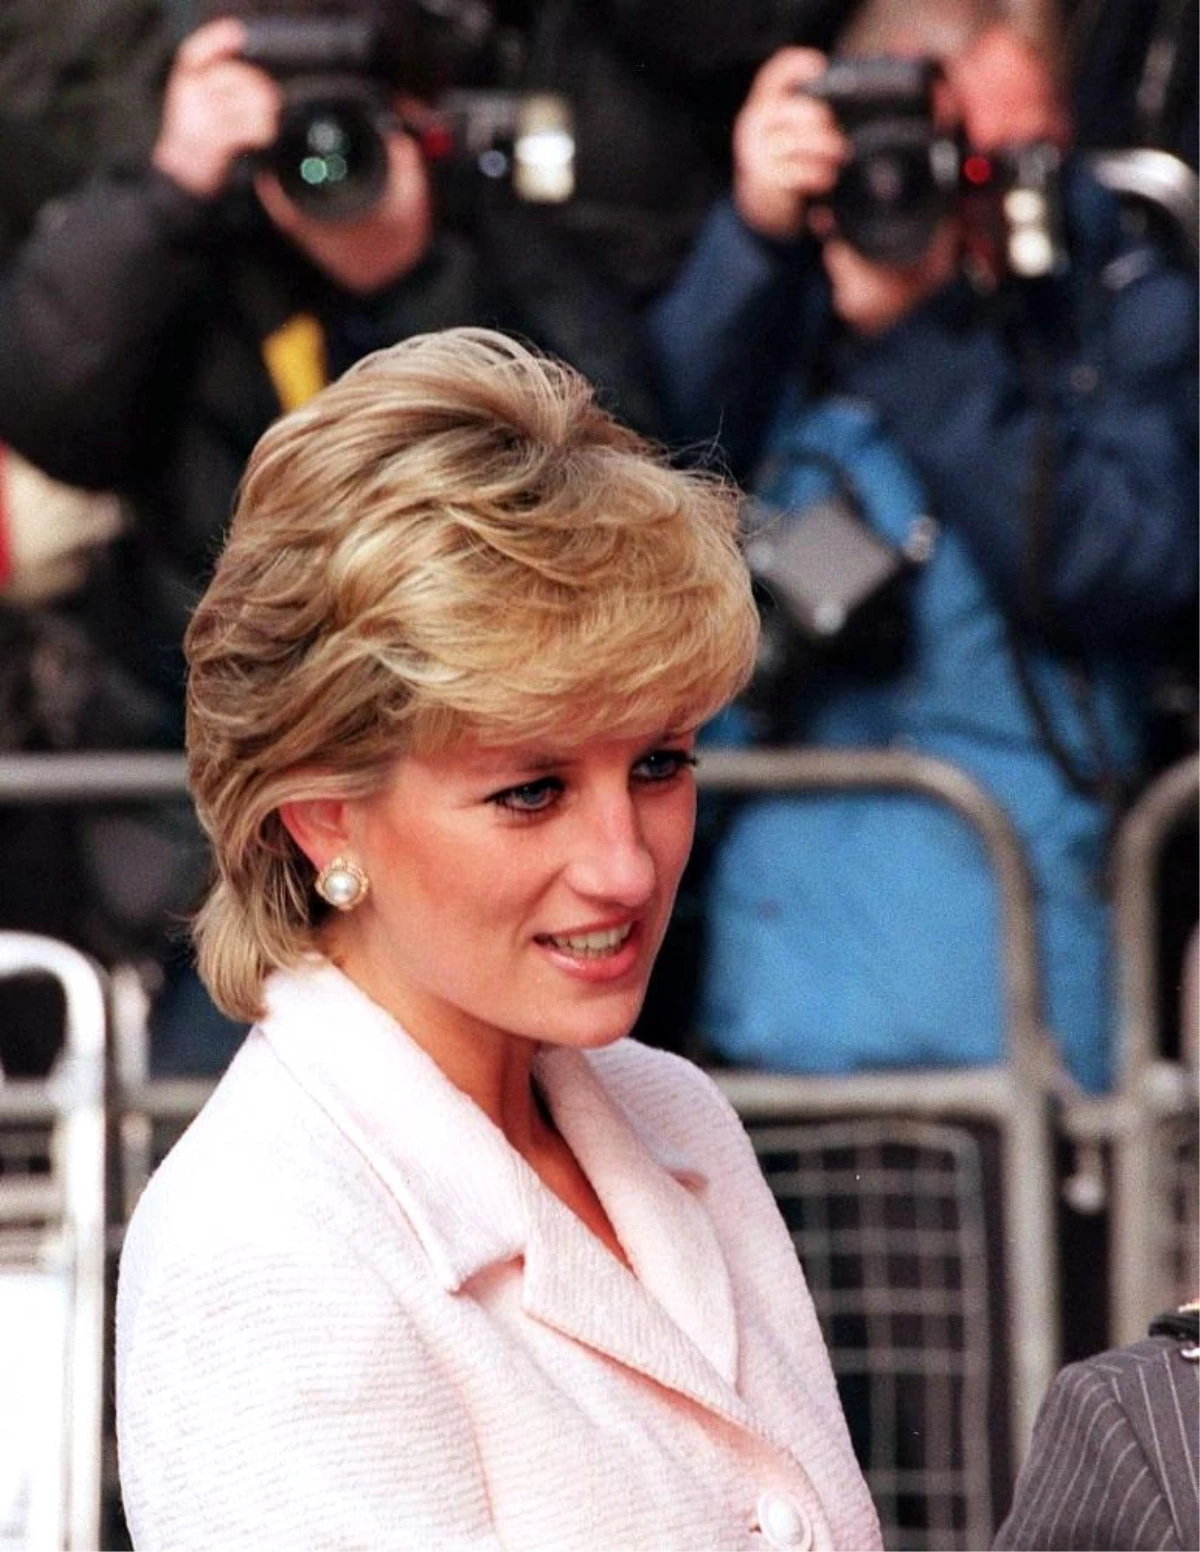 Prenses Diana ile röportaj yapan gazeteciye yönelik cezai soruşturma açılmayacak